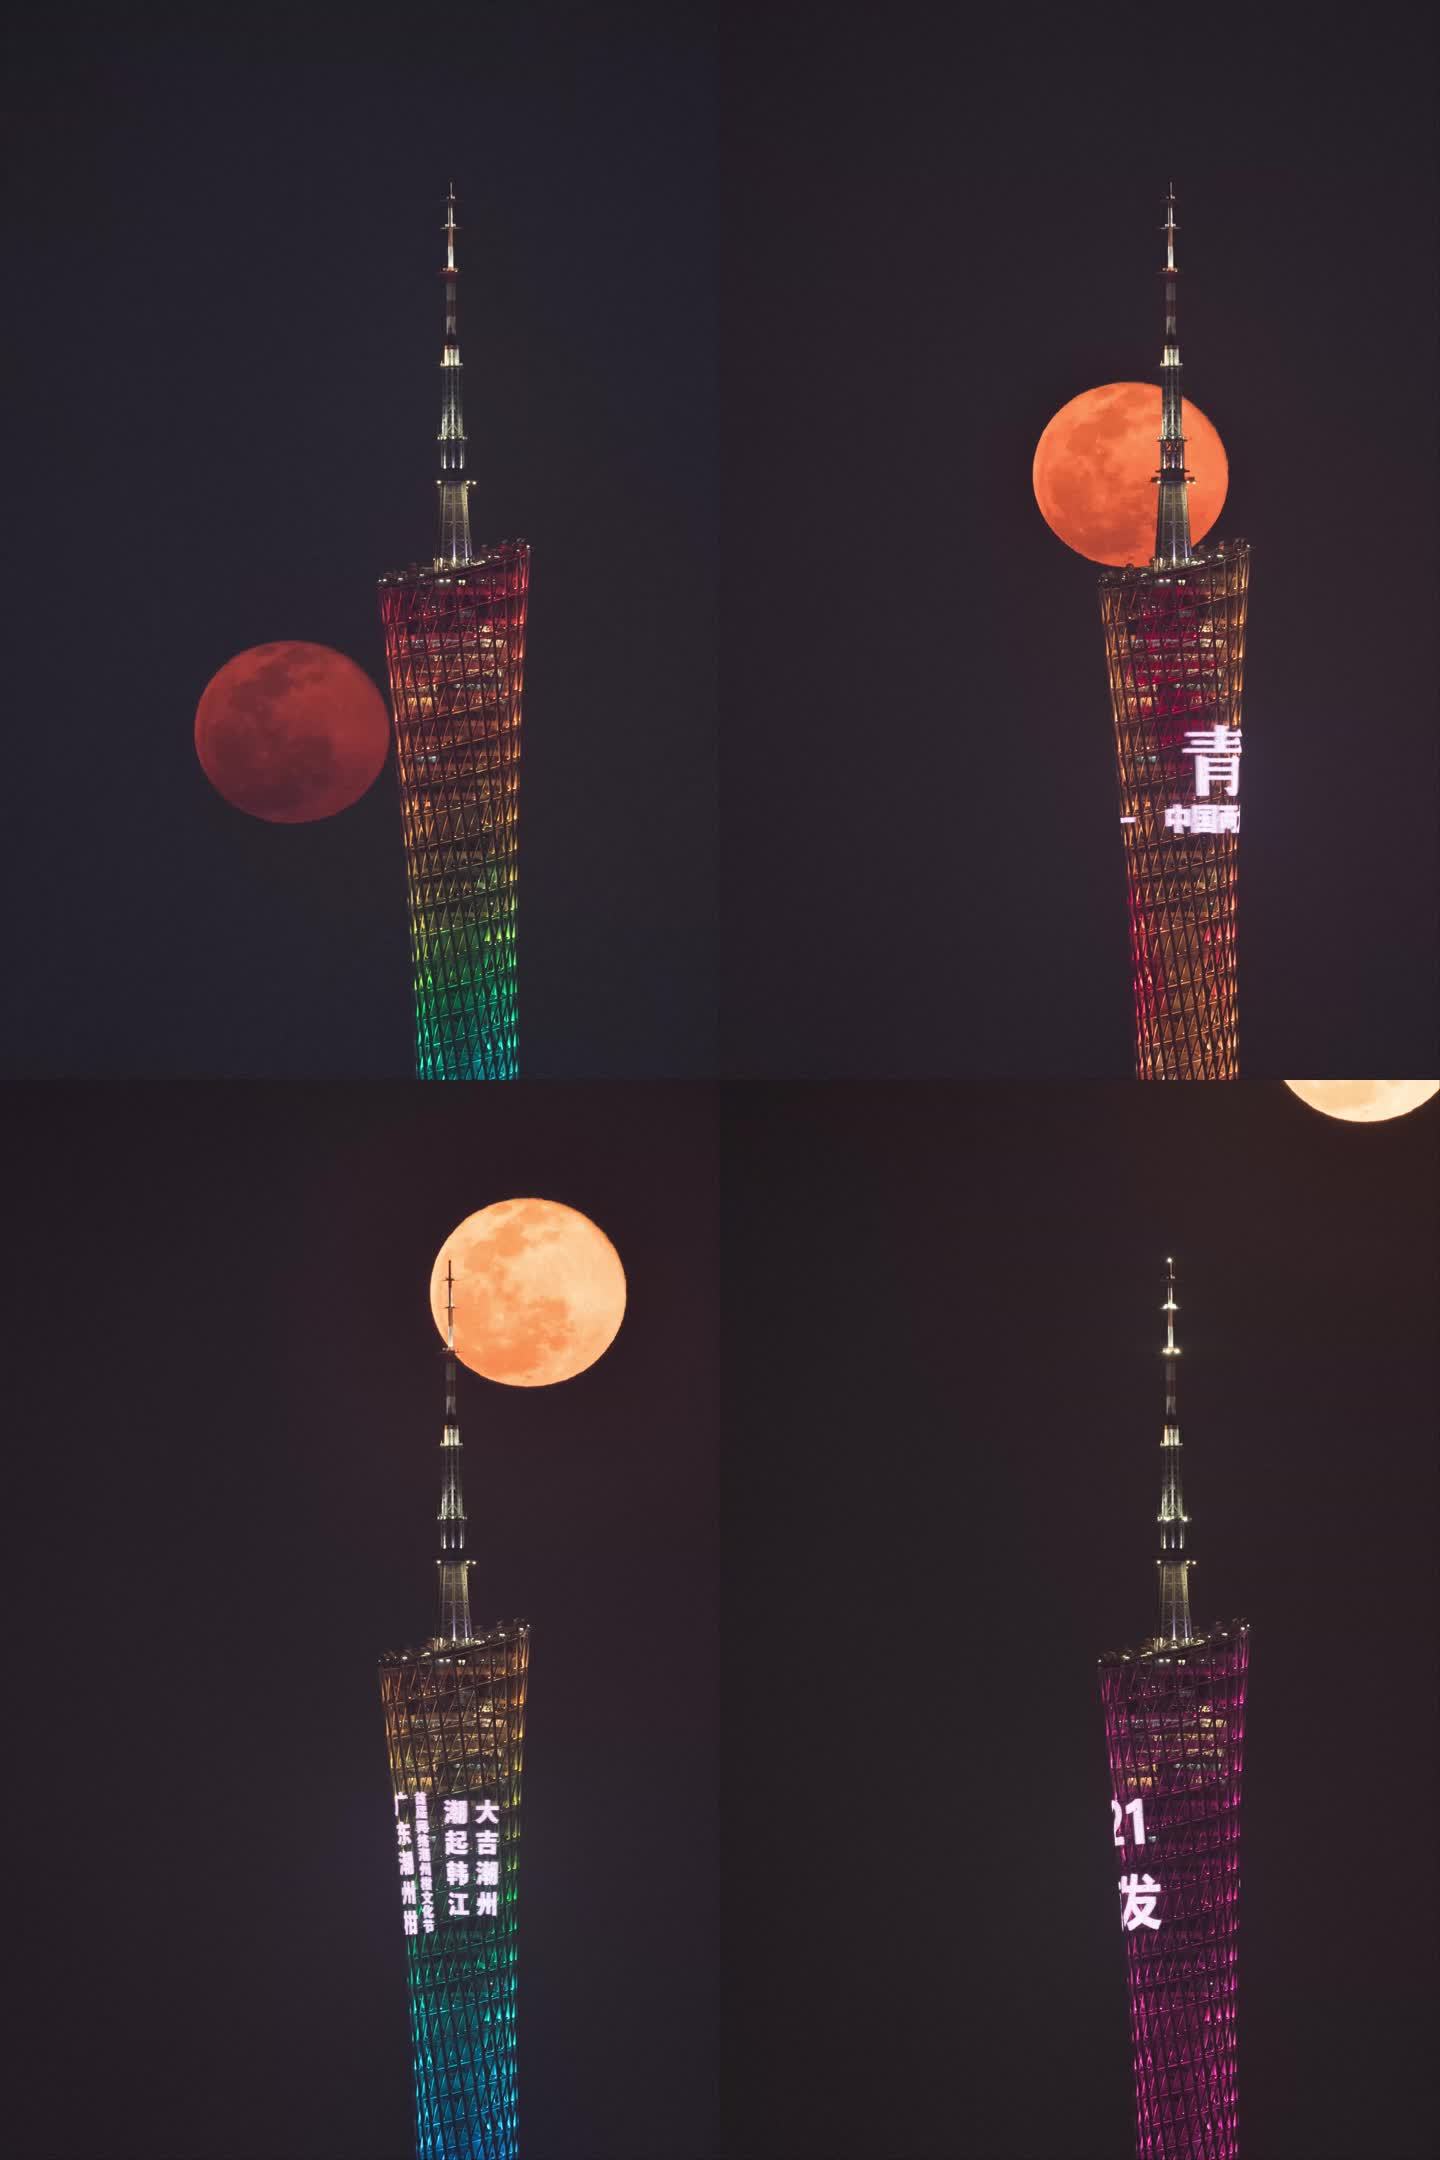 20200129-广州塔穿月